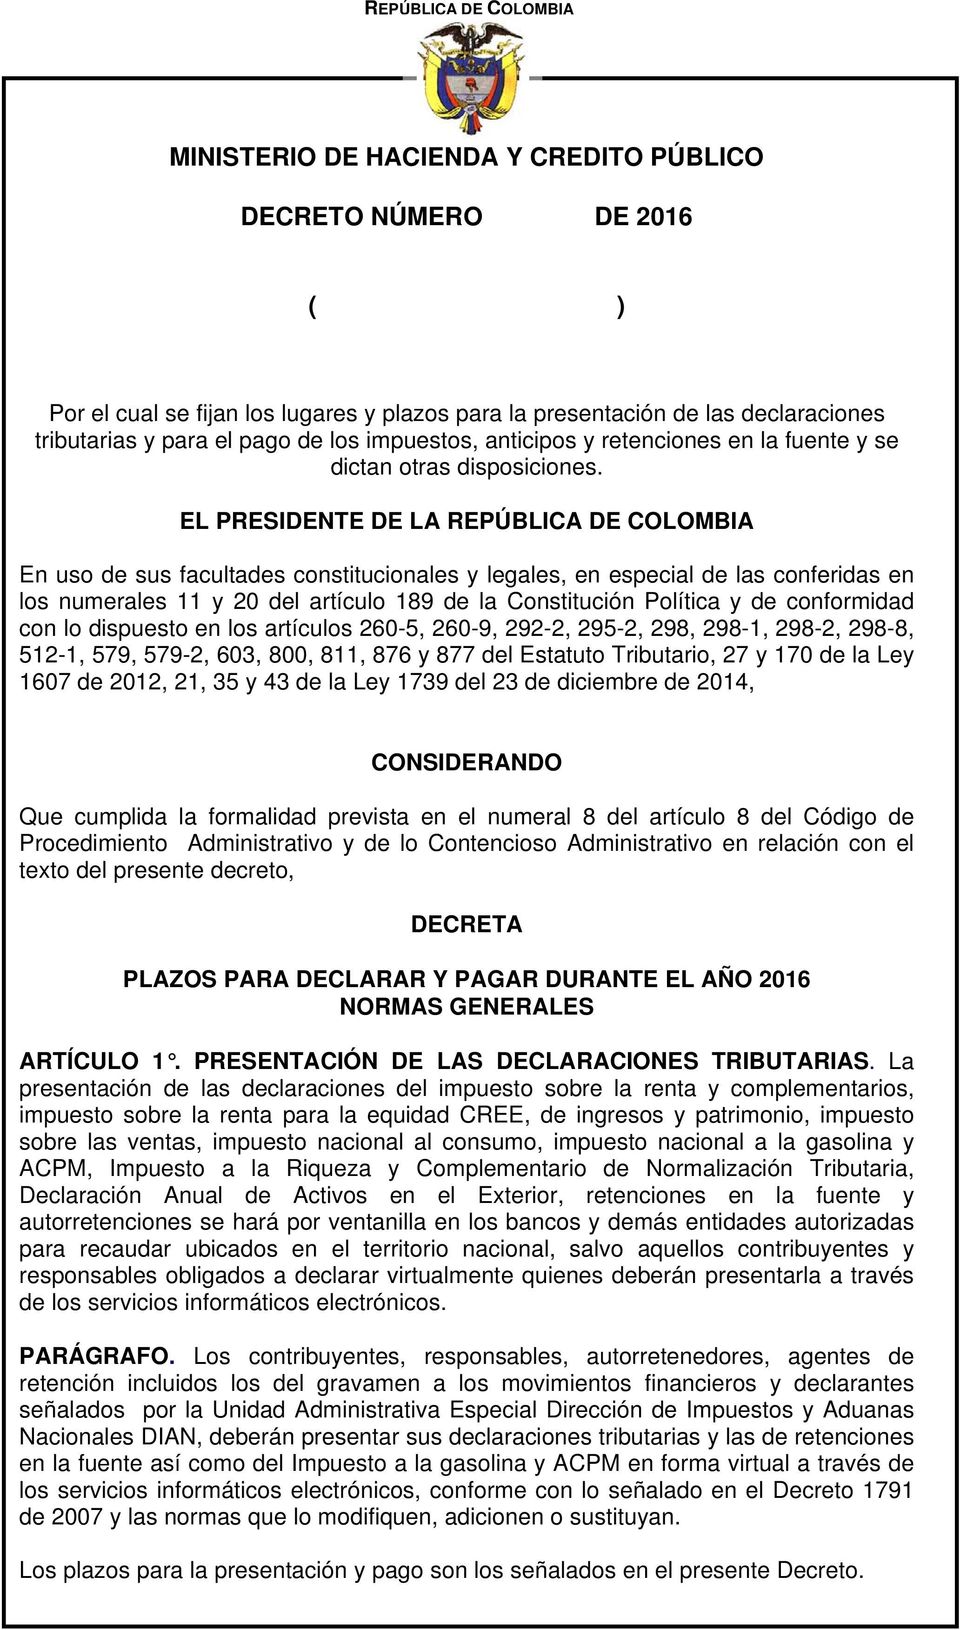 EL PRESIDENTE DE LA REPÚBLICA DE COLOMBIA En uso de sus facultades constitucionales y legales, en especial de las conferidas en los numerales 11 y 20 del artículo 189 de la Constitución Política y de